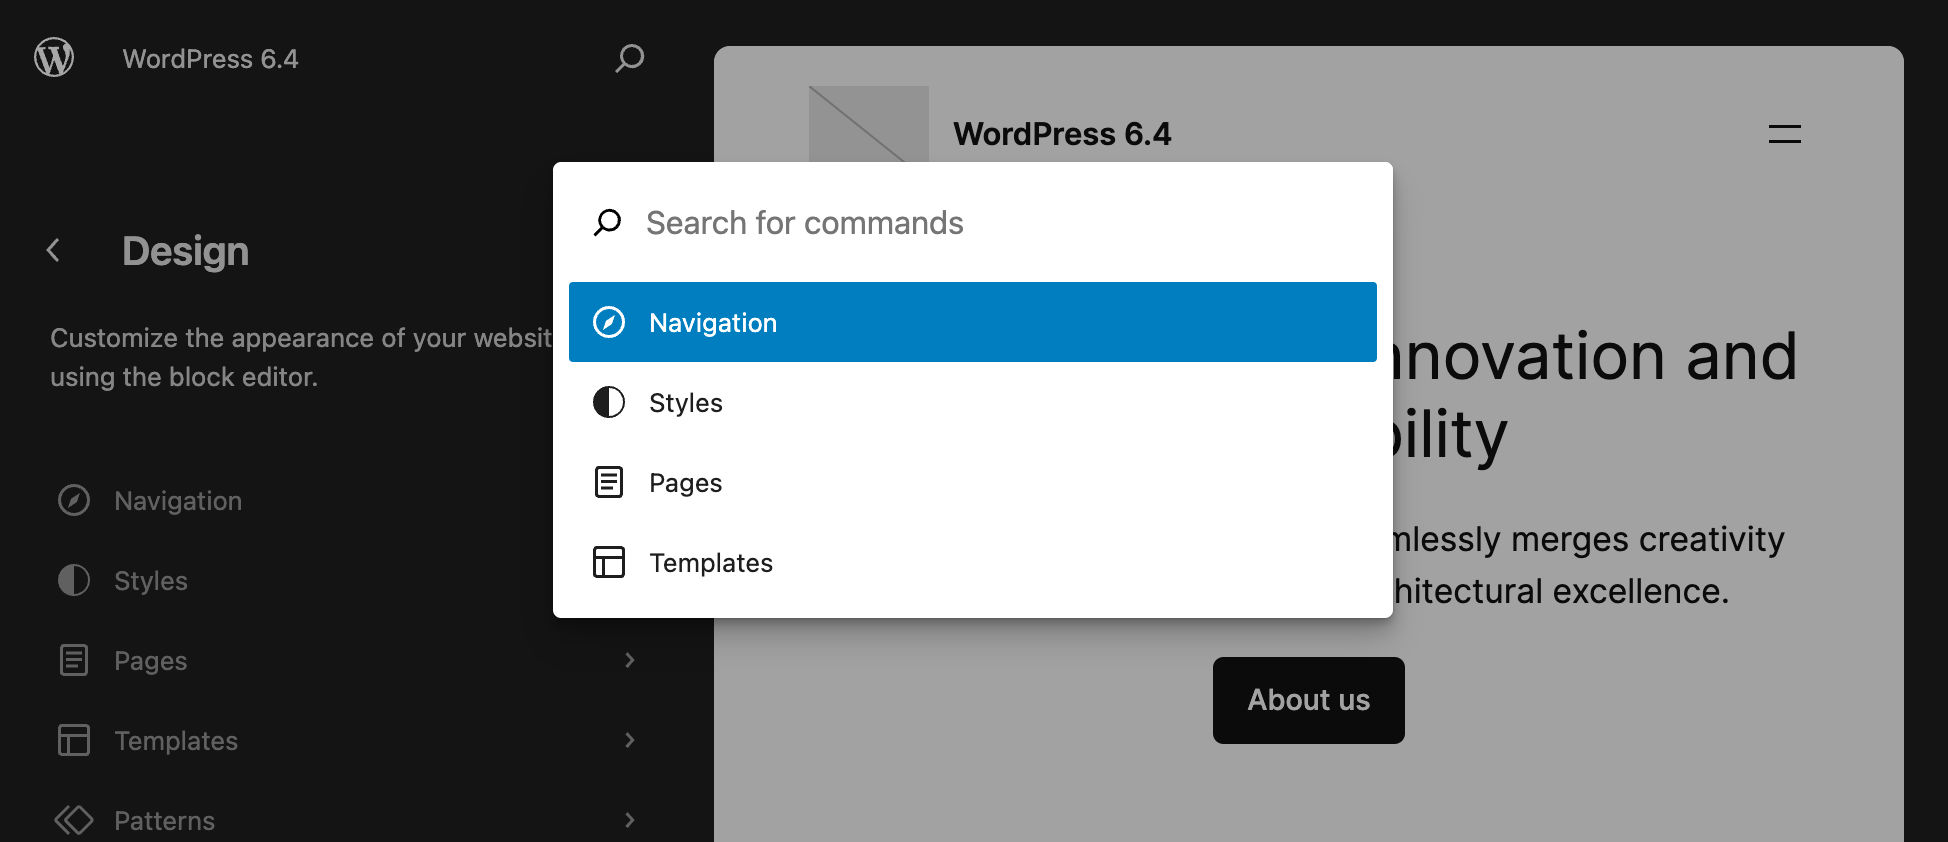 Het commandopalet in WordPress 6.4